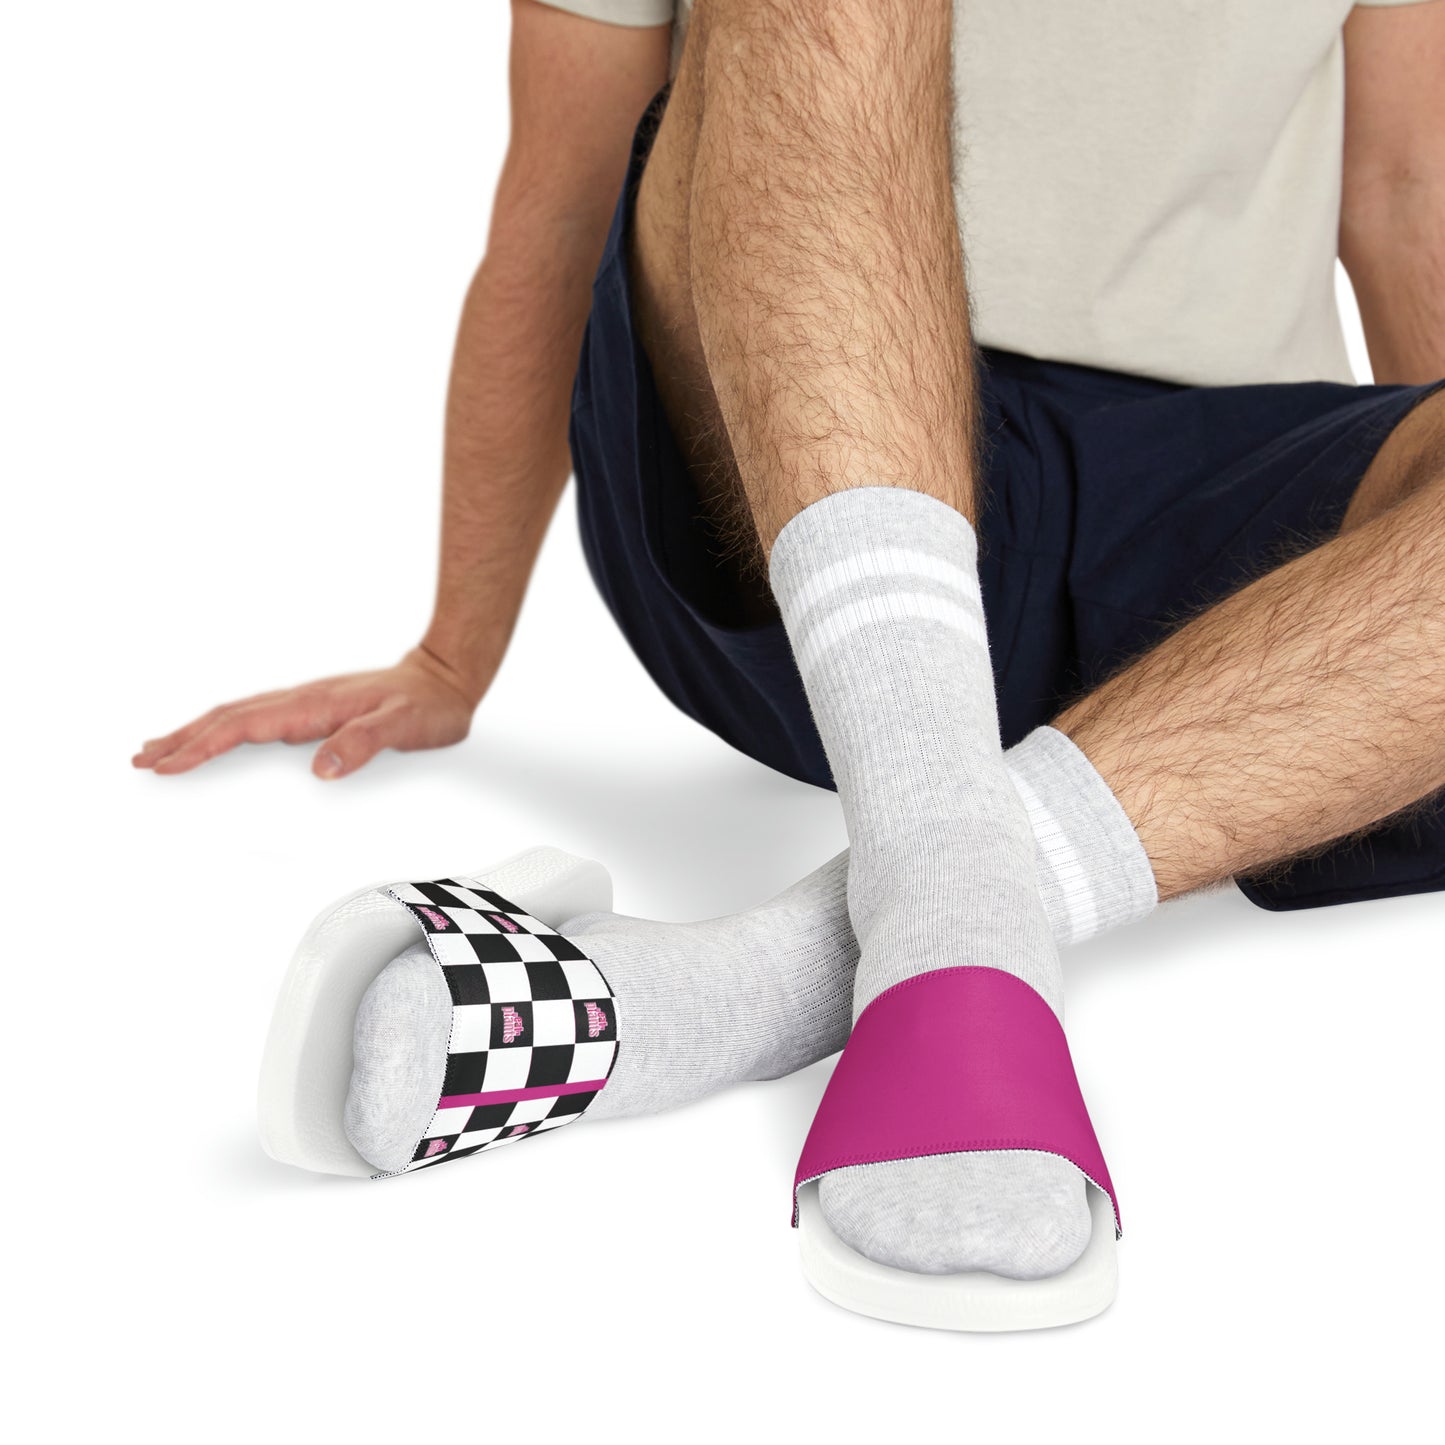 EFP Slide Sandals PINK (MENS)